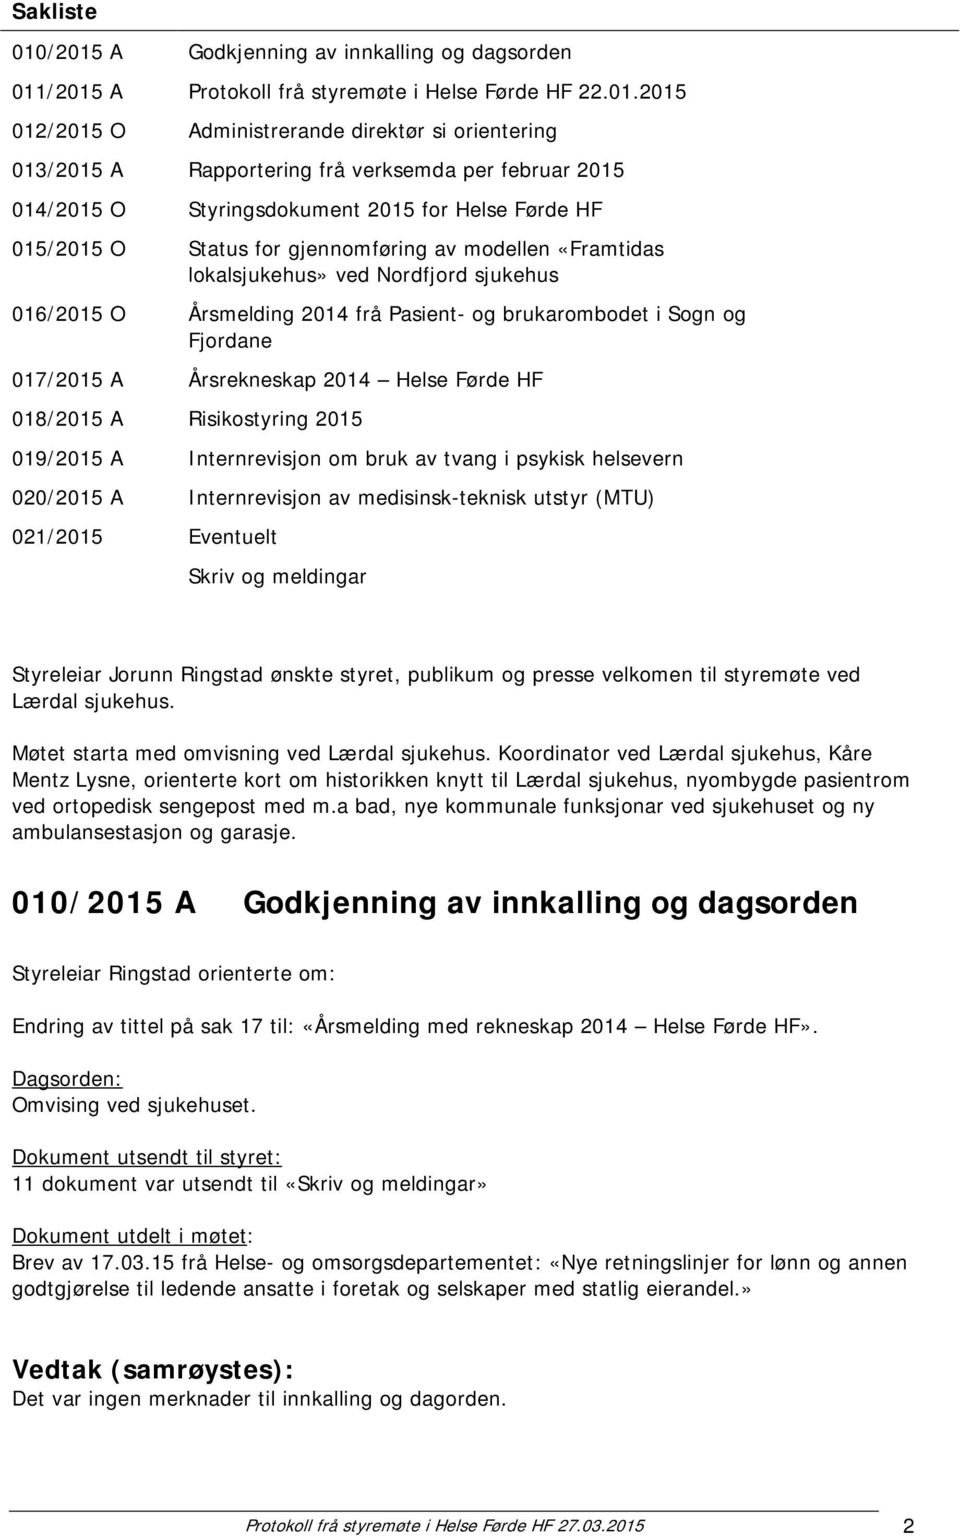 per februar 2015 014/2015 O Styringsdokument 2015 for Helse Førde HF 015/2015 O Status for gjennomføring av modellen «Framtidas lokalsjukehus» ved Nordfjord sjukehus 016/2015 O Årsmelding 2014 frå